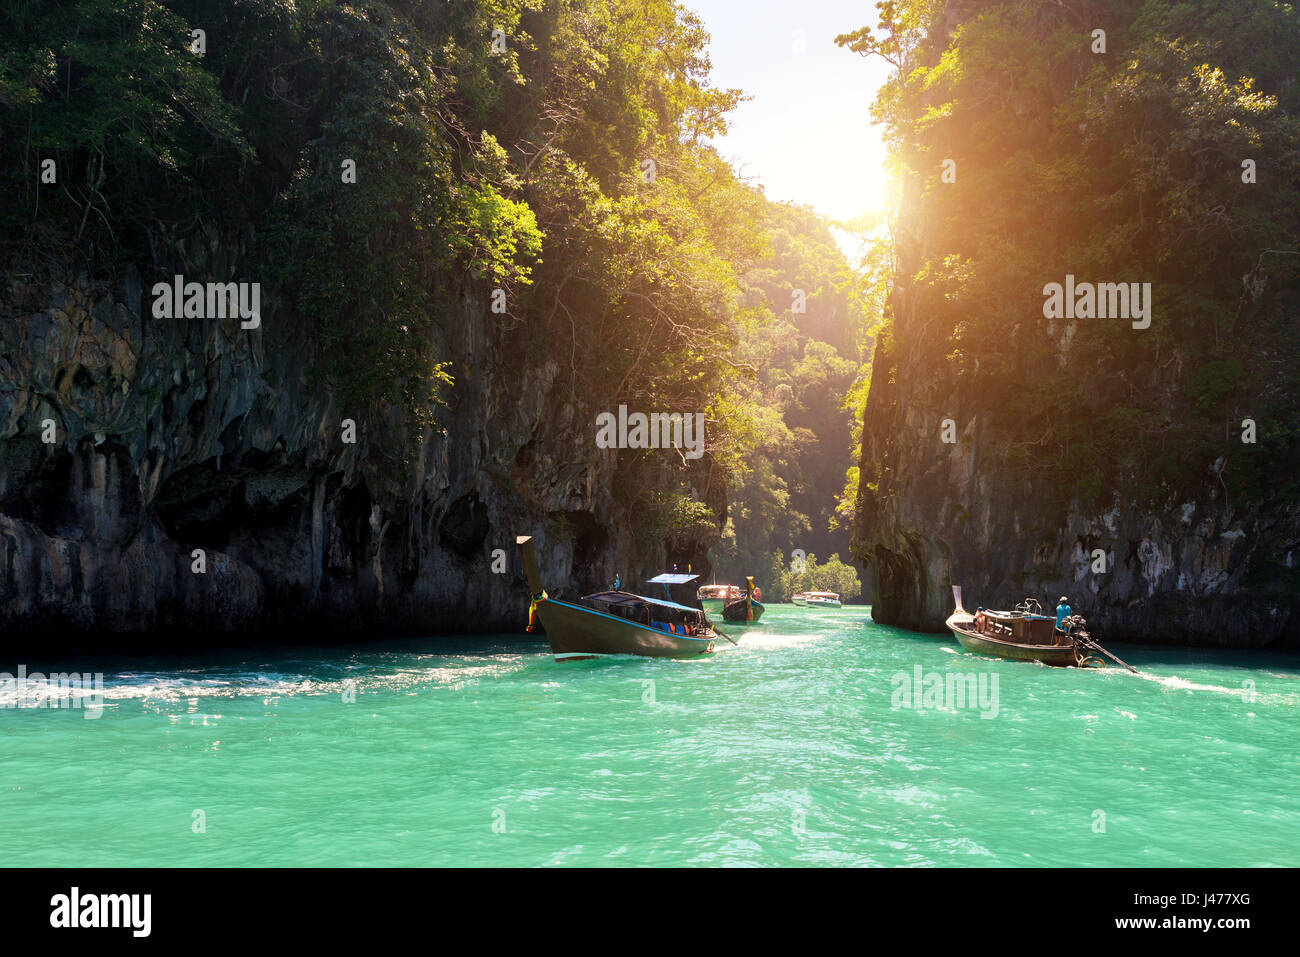 Schöne Landschaft der Felsen Berge und kristallklares Meer mit Longtail Boot in Phuket, Thailand. Sommer, Reisen, Urlaub, Urlaub Konzept. Stockfoto